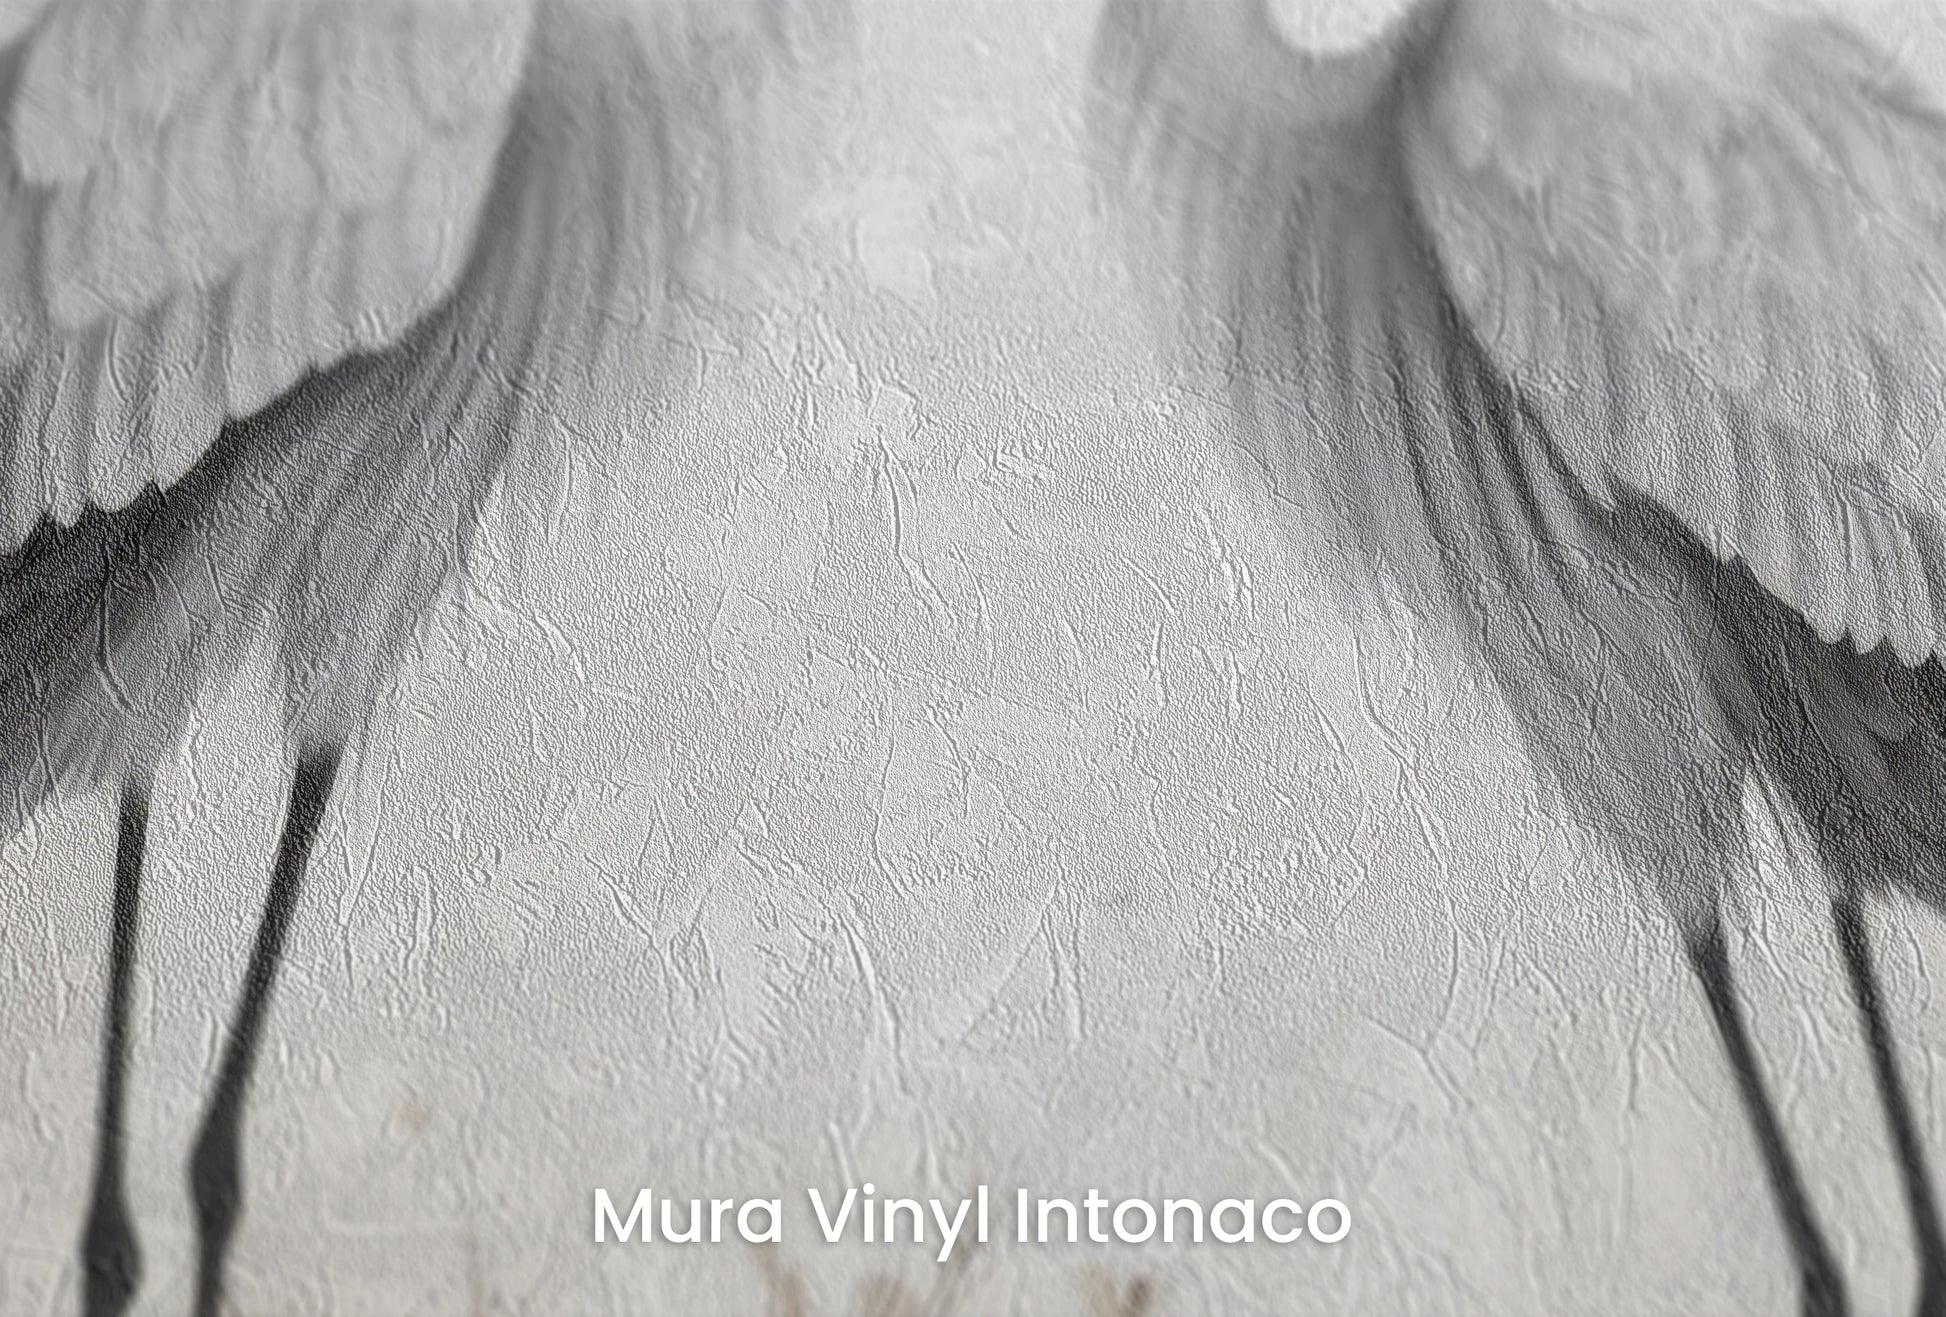 Zbliżenie na artystyczną fototapetę o nazwie Eternal Bond na podłożu Mura Vinyl Intonaco - struktura tartego tynku.